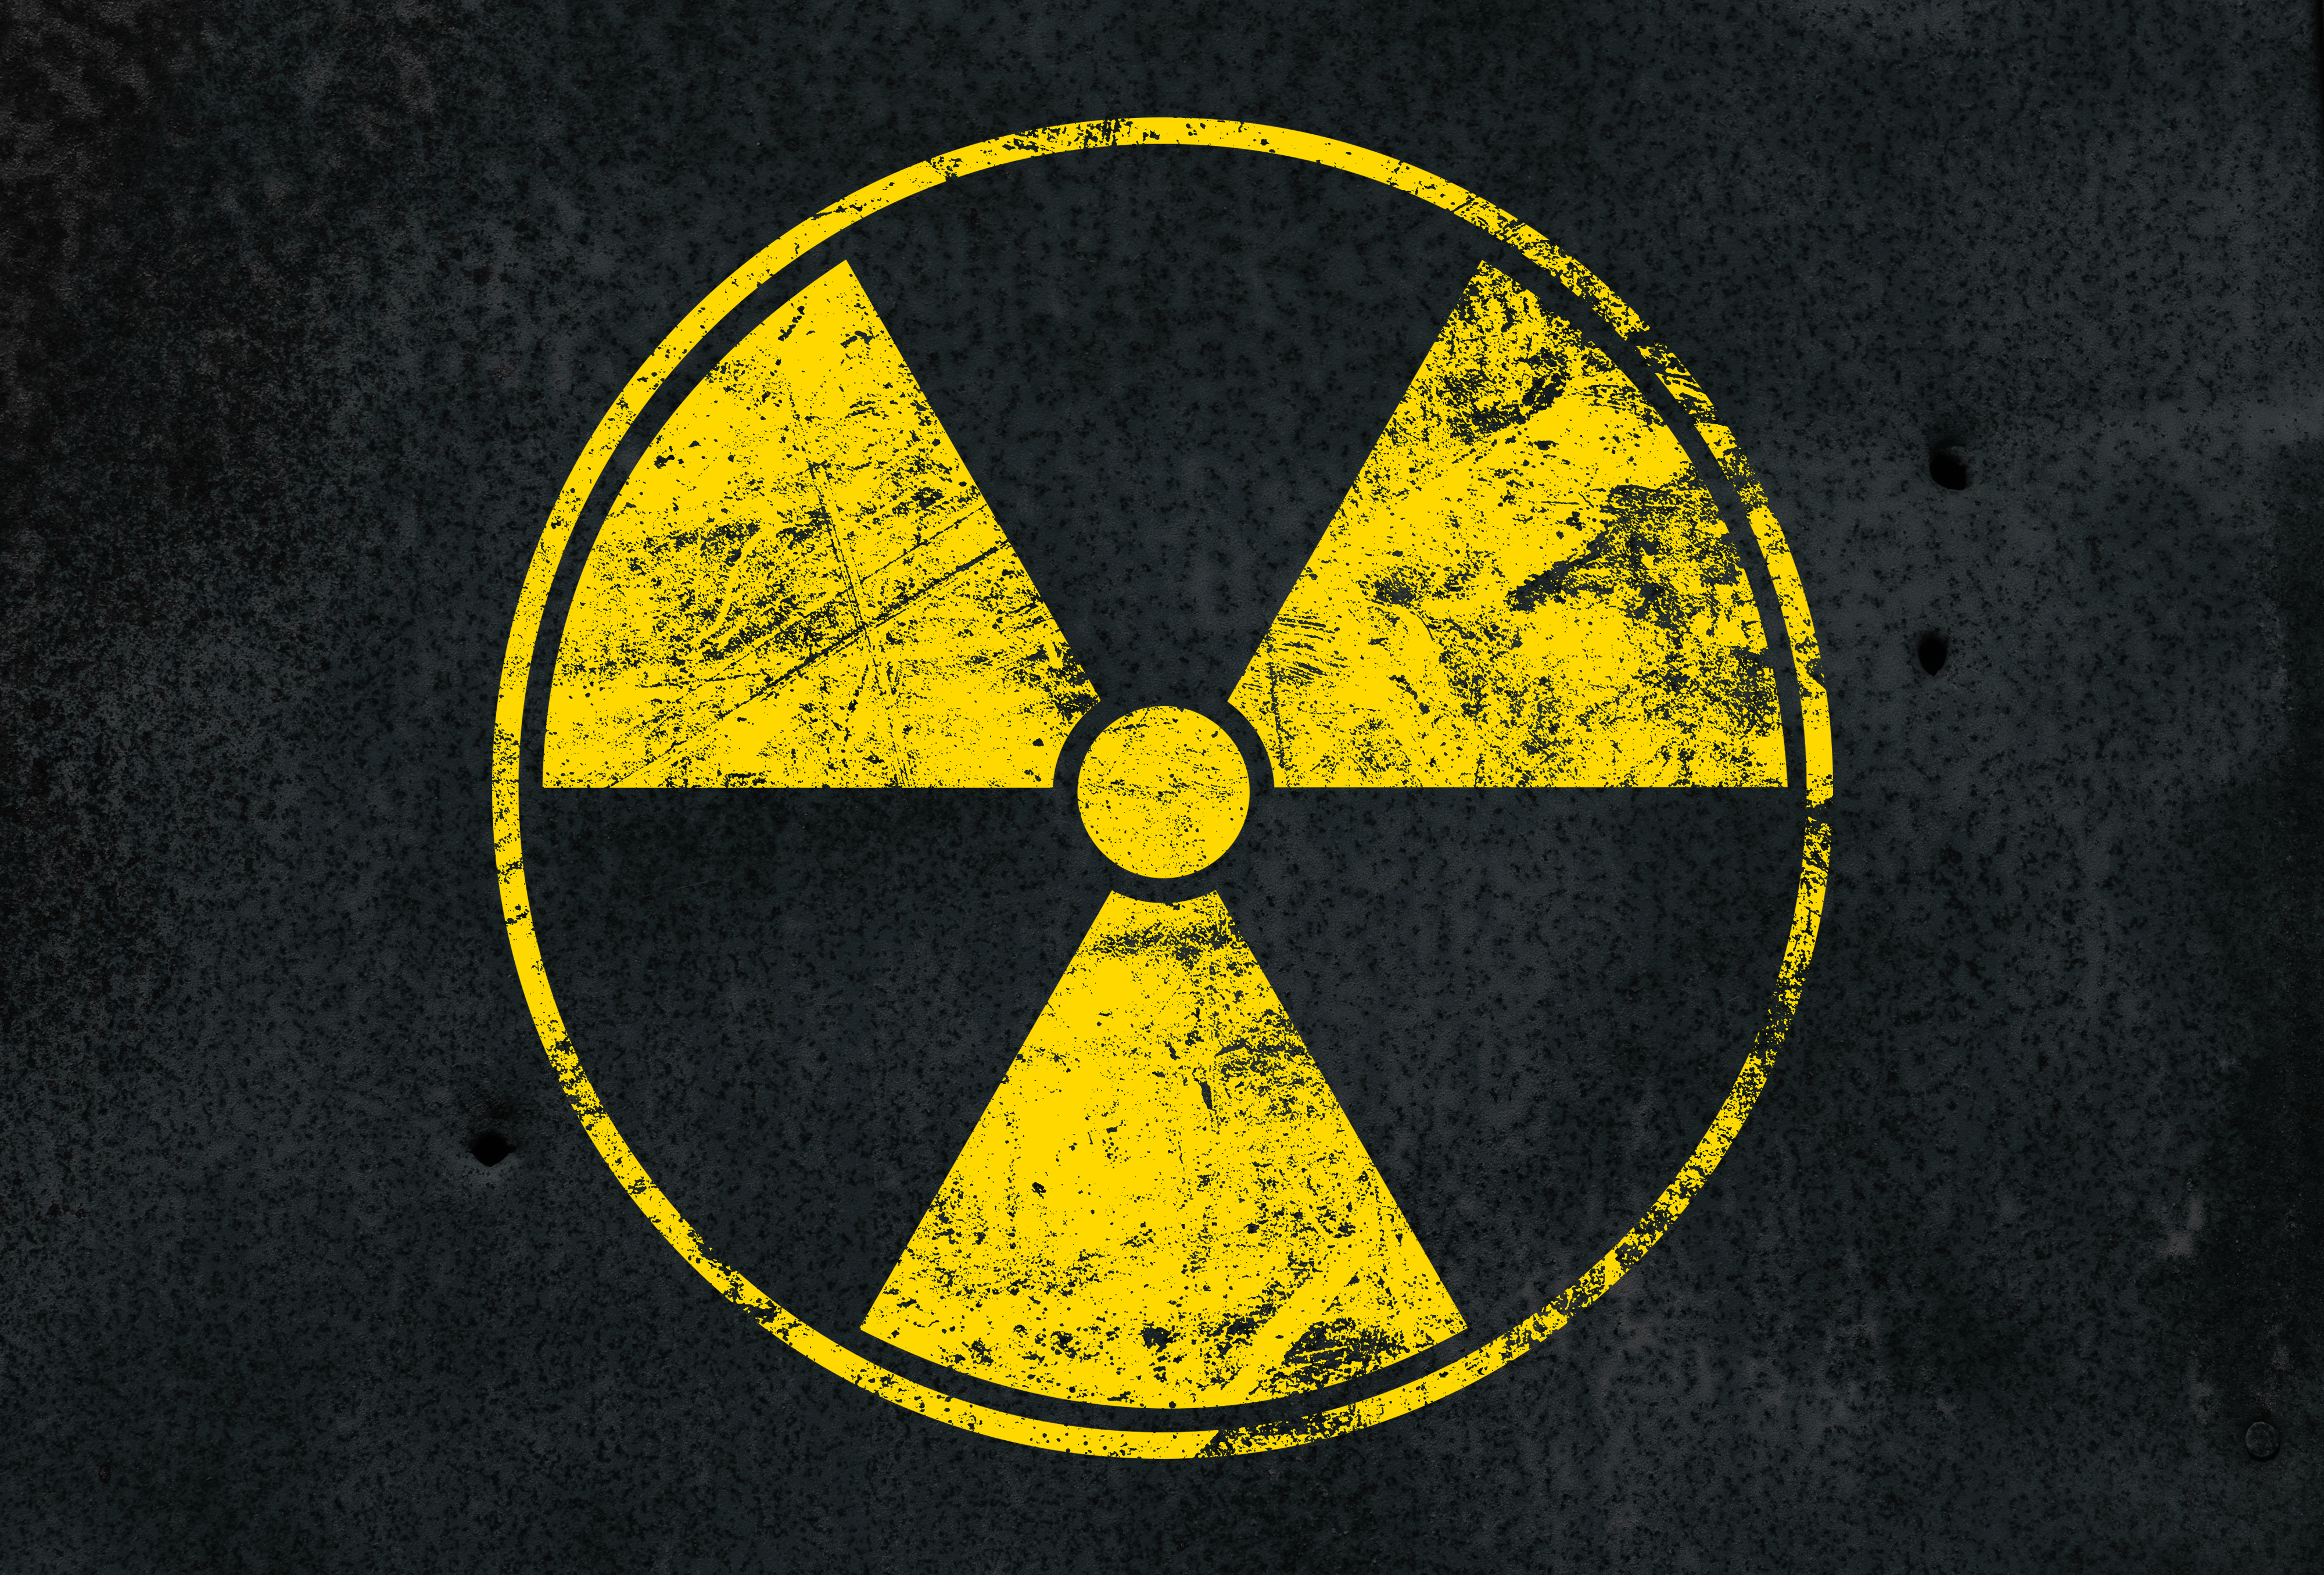 Rendelt ásványok miatt jelzett be a radioaktivitás-mérő Pázmándon - Blikk